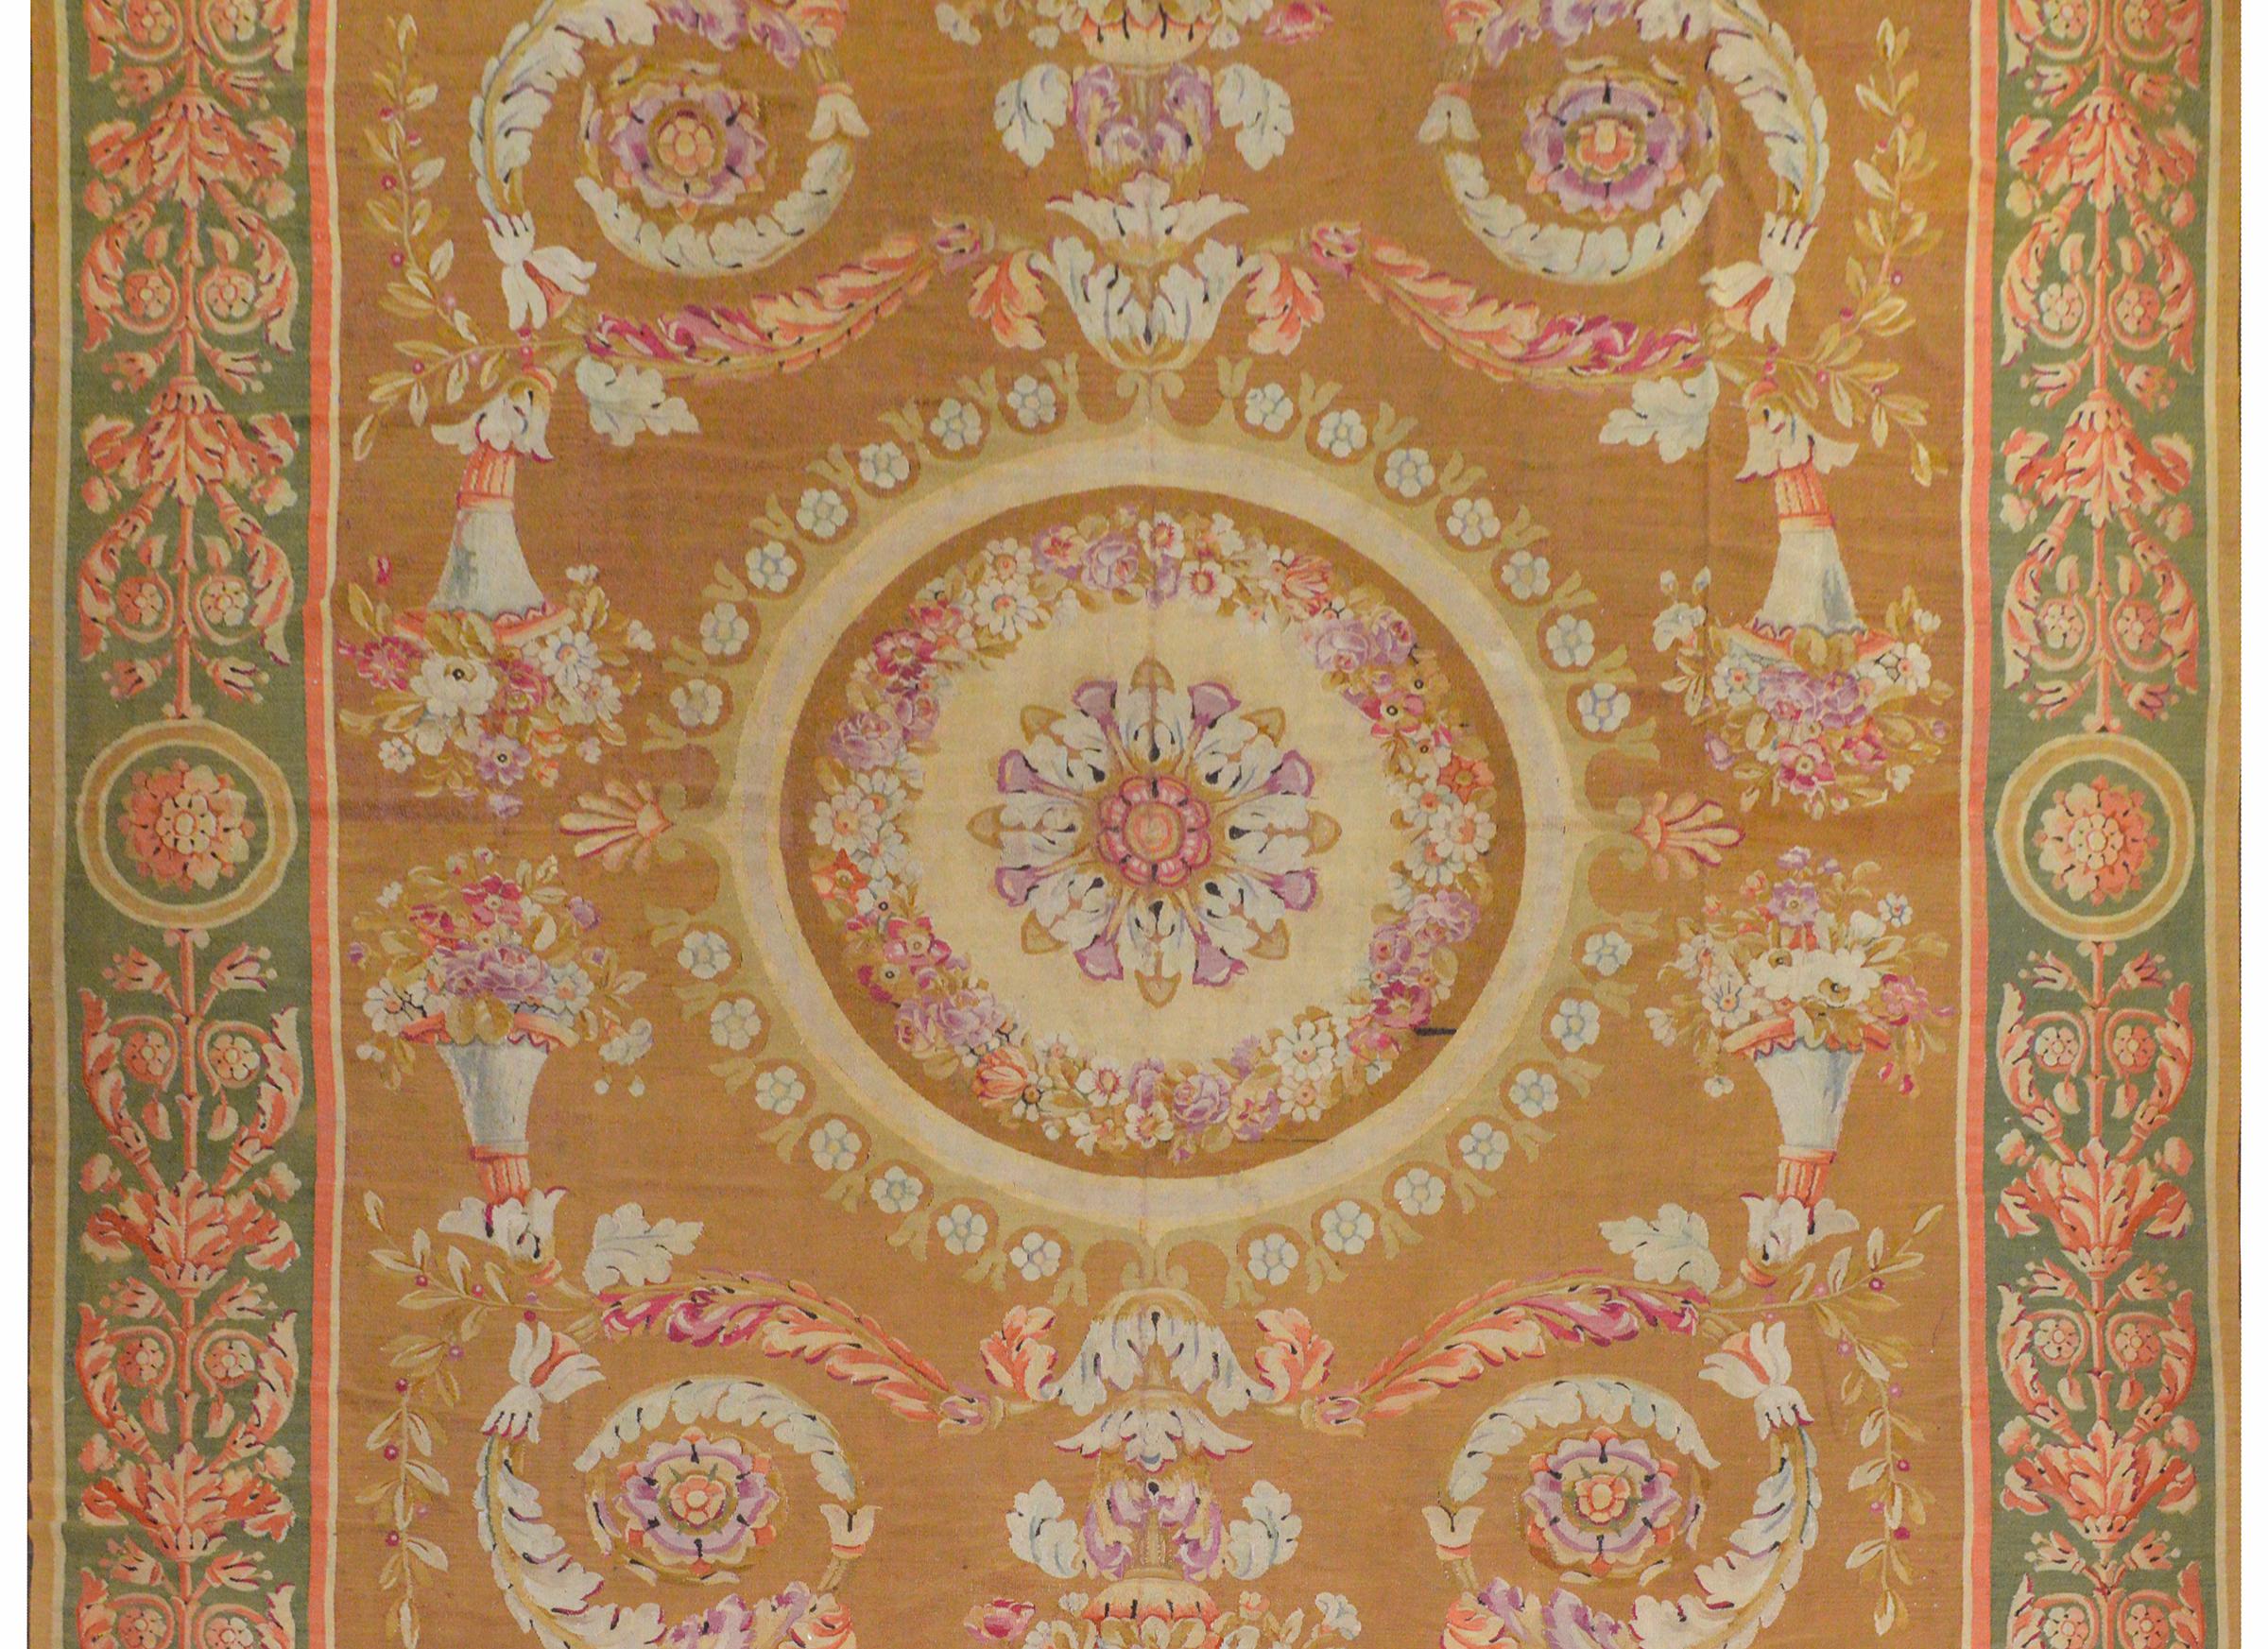 Remarquable tapis d'Aubusson français de la fin du XIXe siècle à motif classique contenant des feuilles d'acanthe et des bouquets floraux défilant autour d'un médaillon floral central entouré d'une bordure à motifs de feuilles d'acanthe et de fleurs.